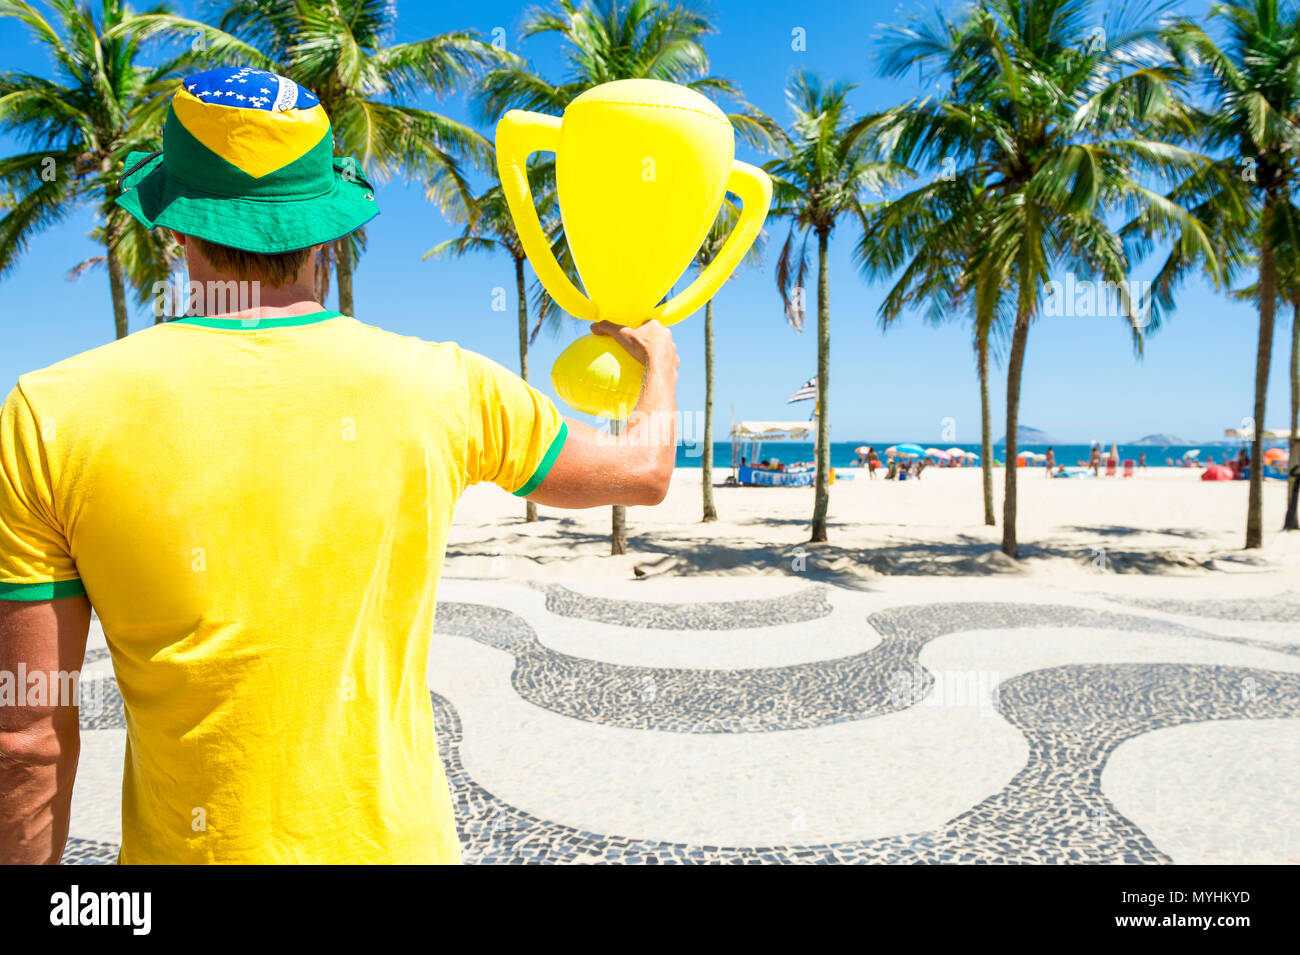 Fier drapeau brésilien à hat holding inflatable trophée à plage de Copacabana Rio de Janeiro Brésil Banque D'Images